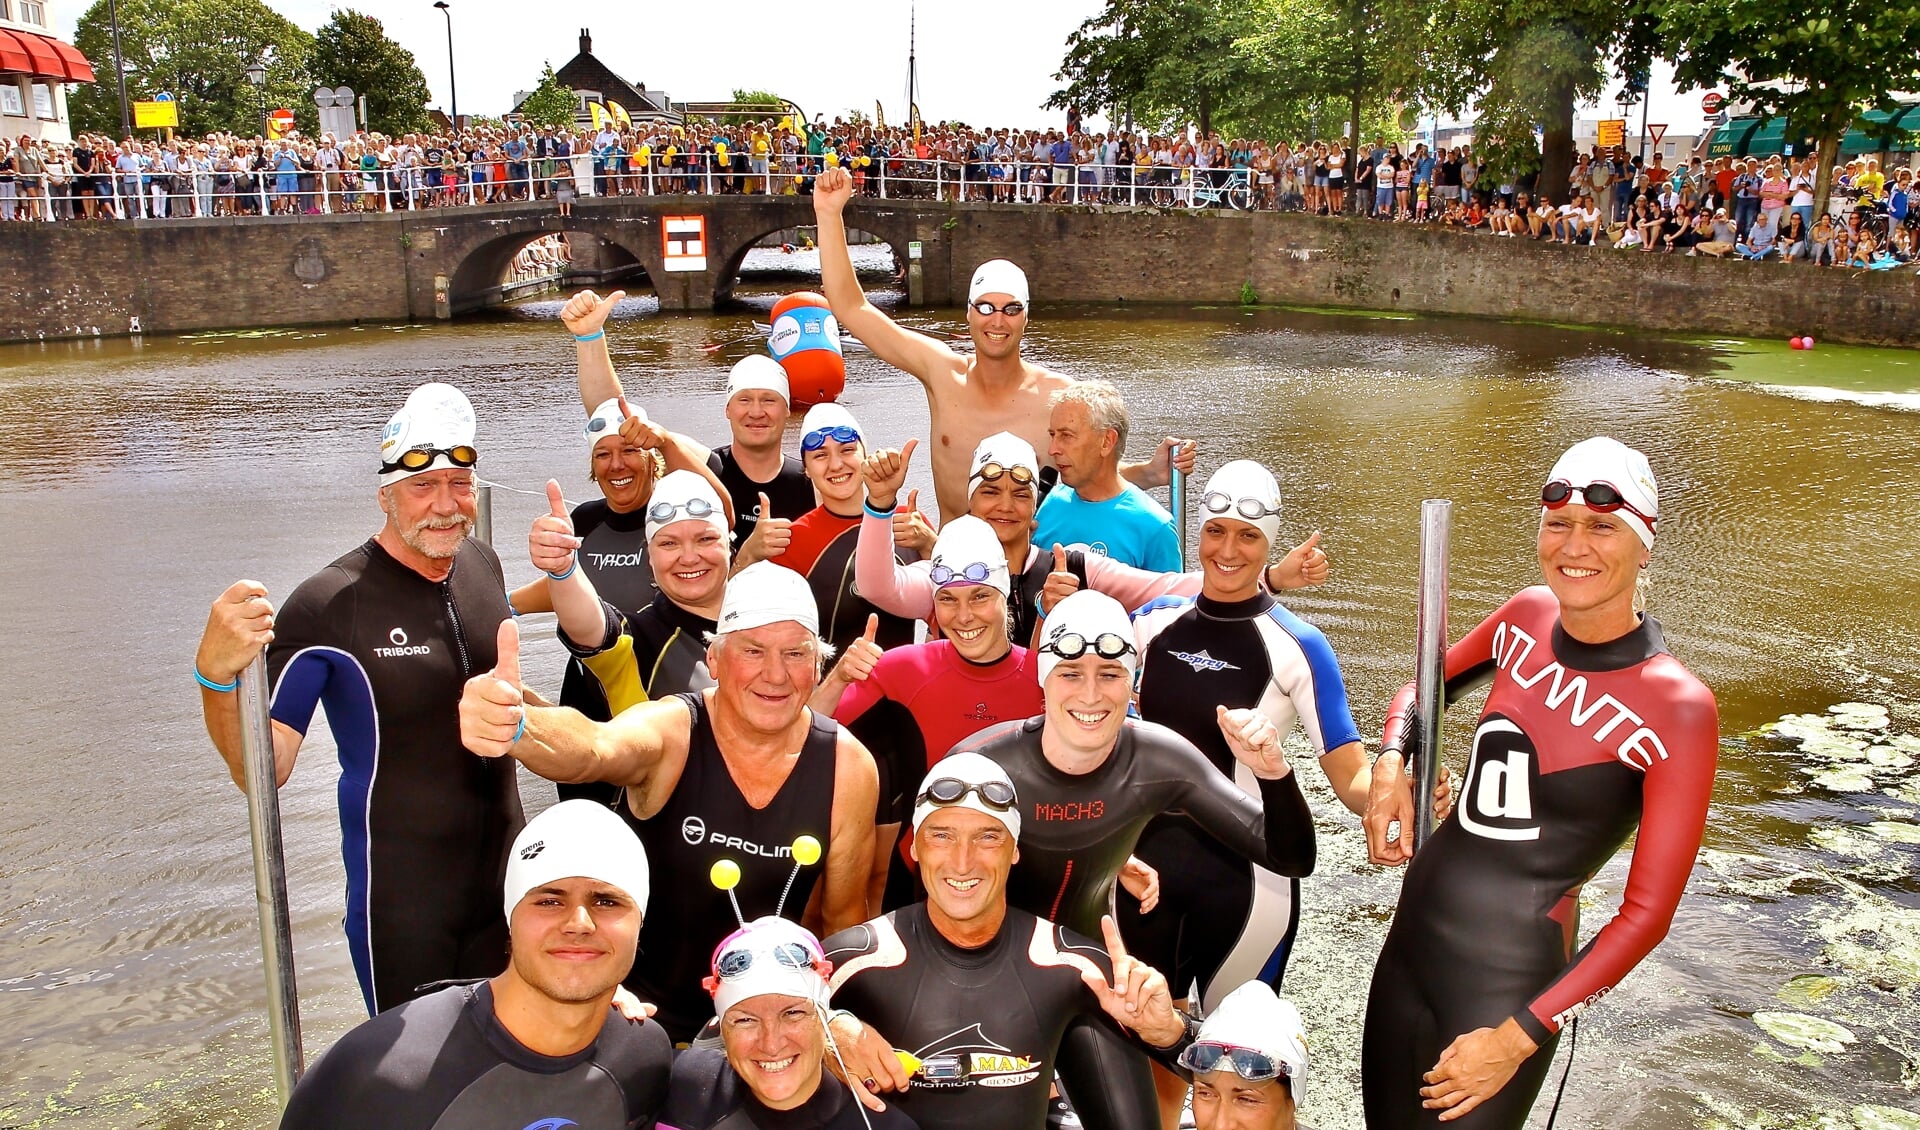 Deelnemers aan een eerdere editie van de Swim, samen met Maarten van der Weijden  (rechtsachter). (Foto: Koos Bommelé)